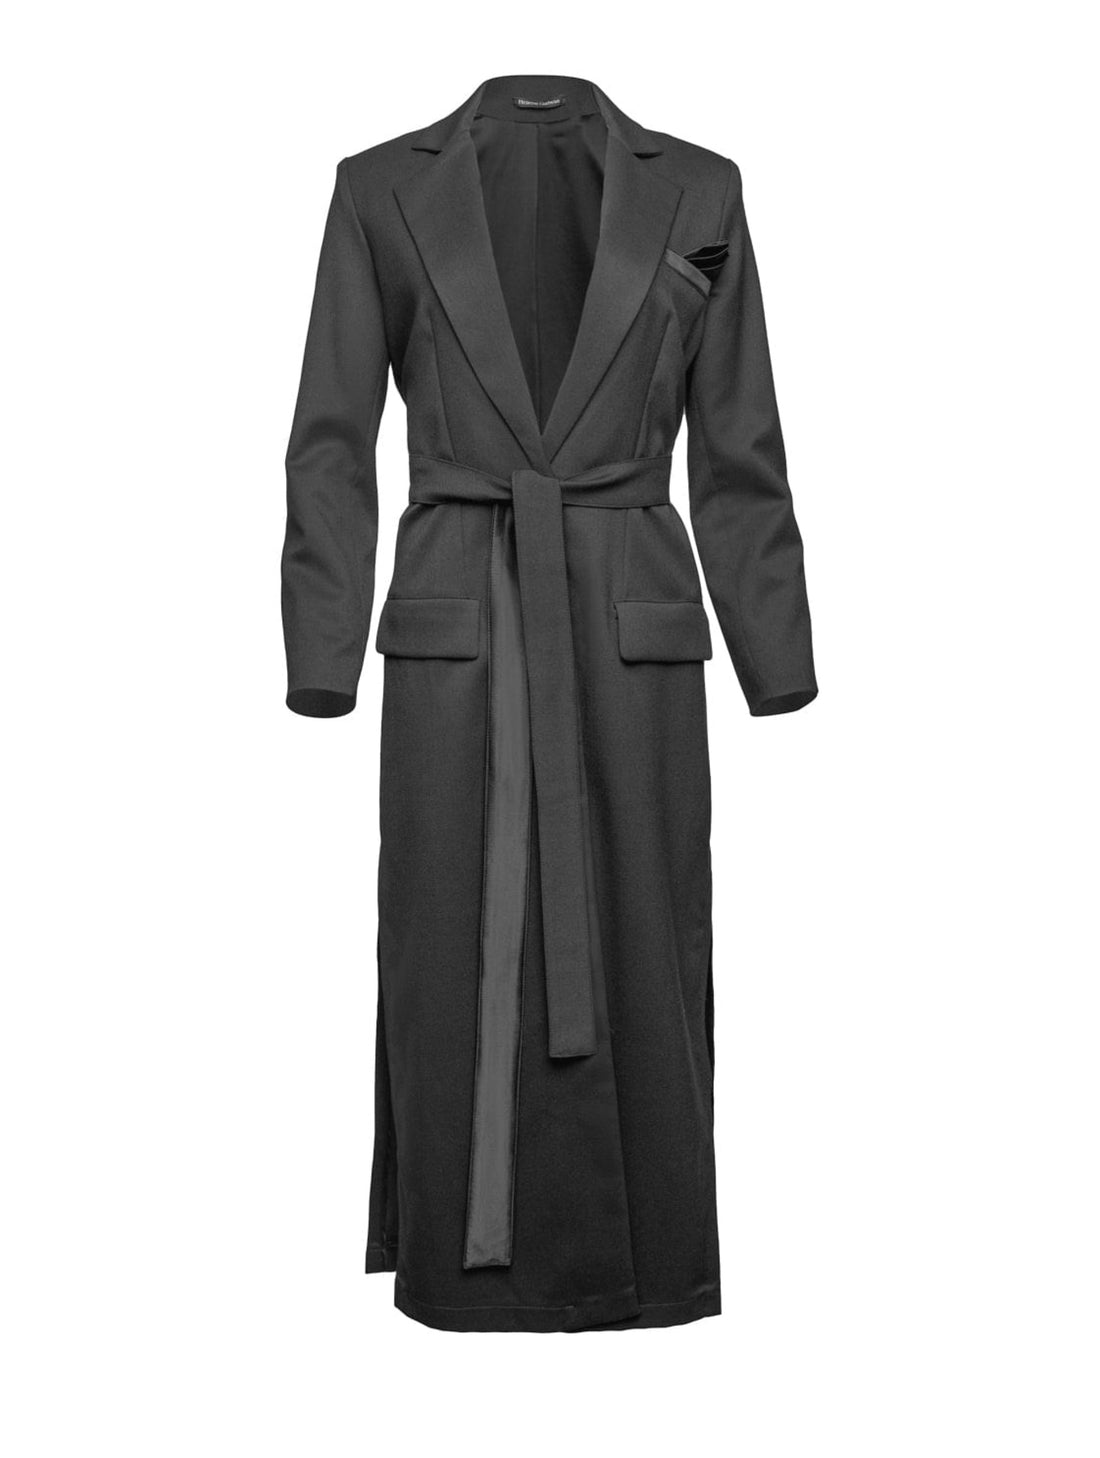 Schwarzer Wollmix Mantel, taillierte Passform, hohe Seitenschlitze für eine schlanke Silhouette mit oder ohne Gürtel tragbar